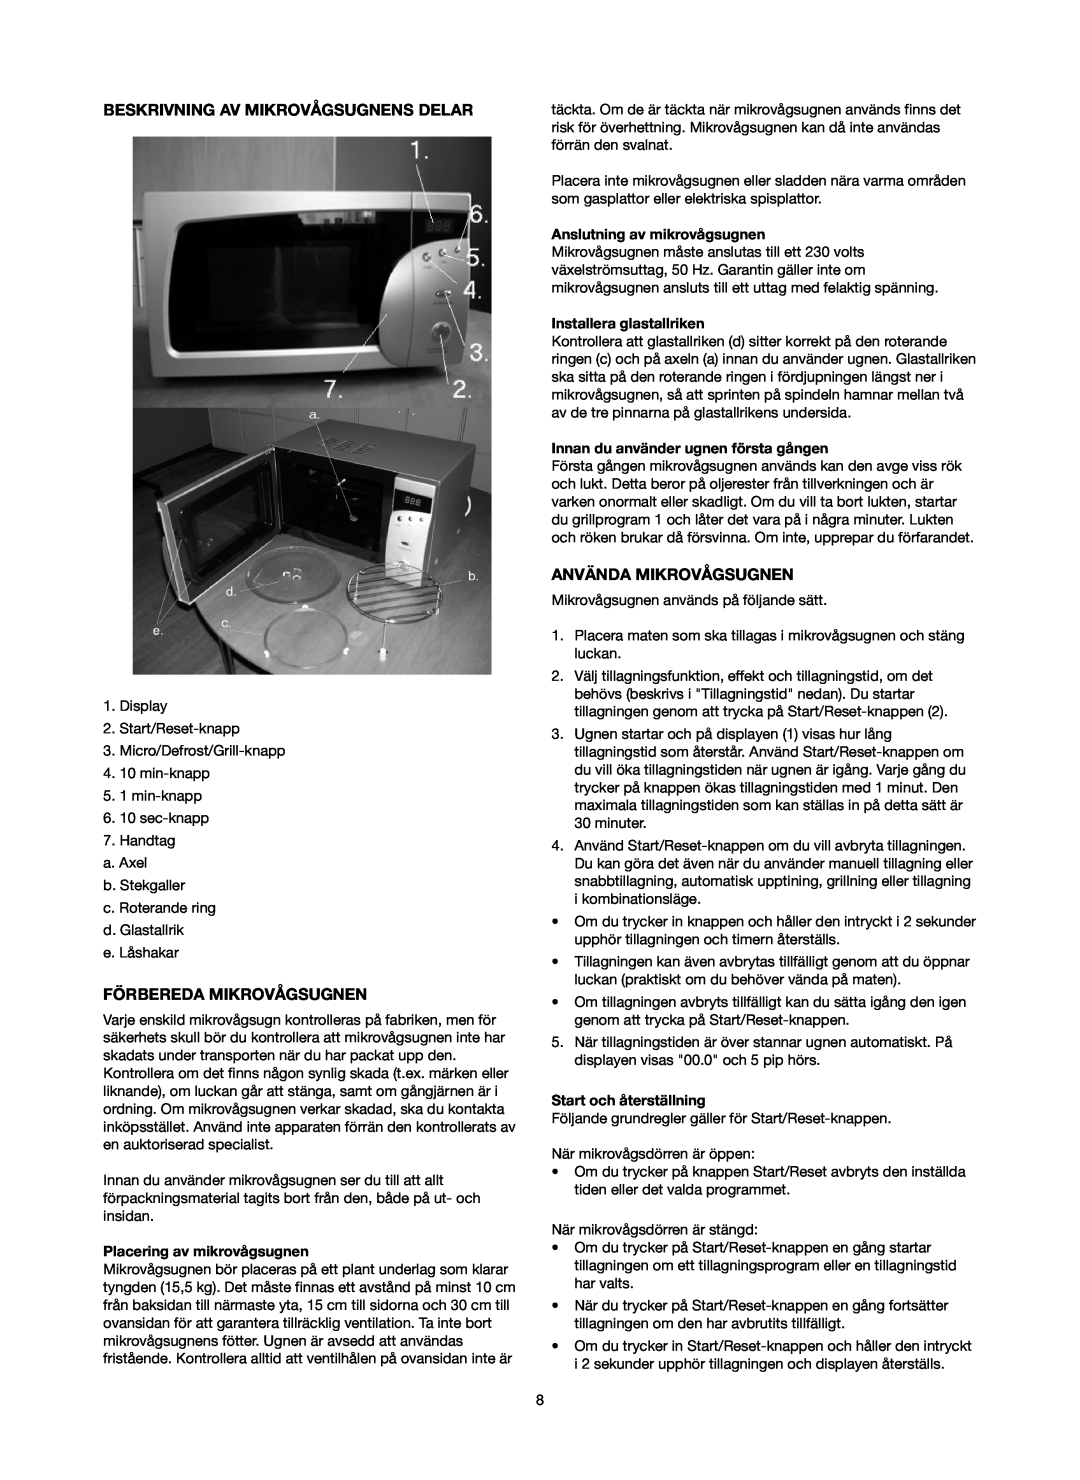 Melissa 753-084 manual Beskrivning Av Mikrovågsugnens Delar, Förbereda Mikrovågsugnen, Använda Mikrovågsugnen 